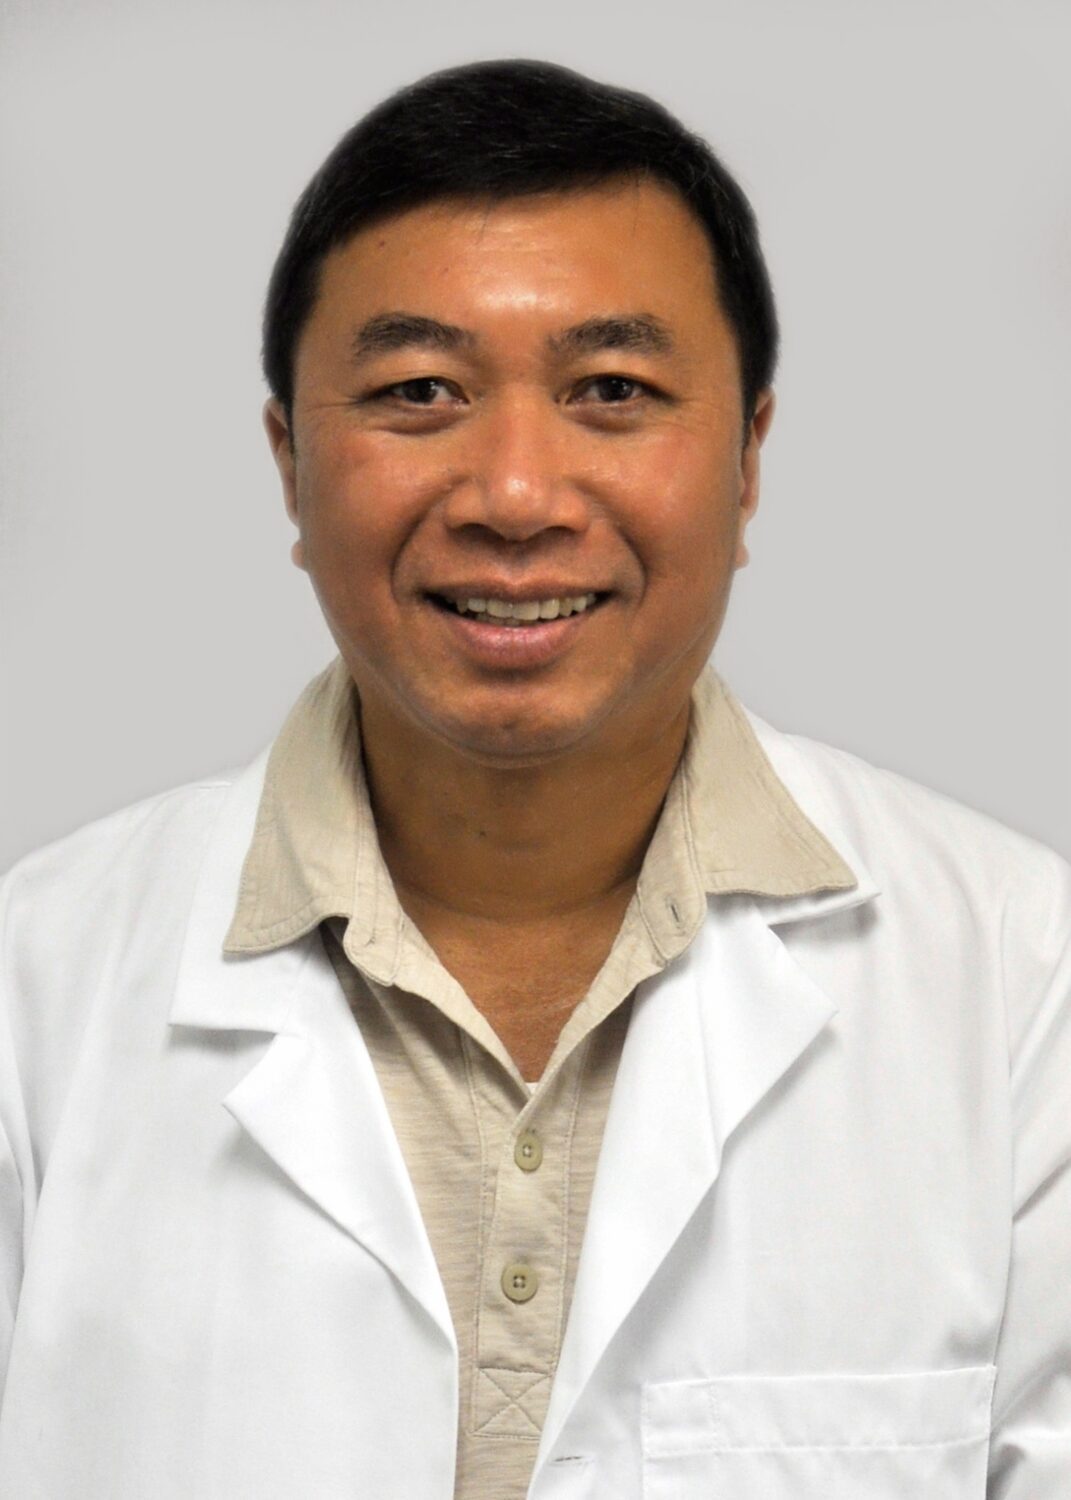 Alfonso L. Sangtian, MD, FAAP